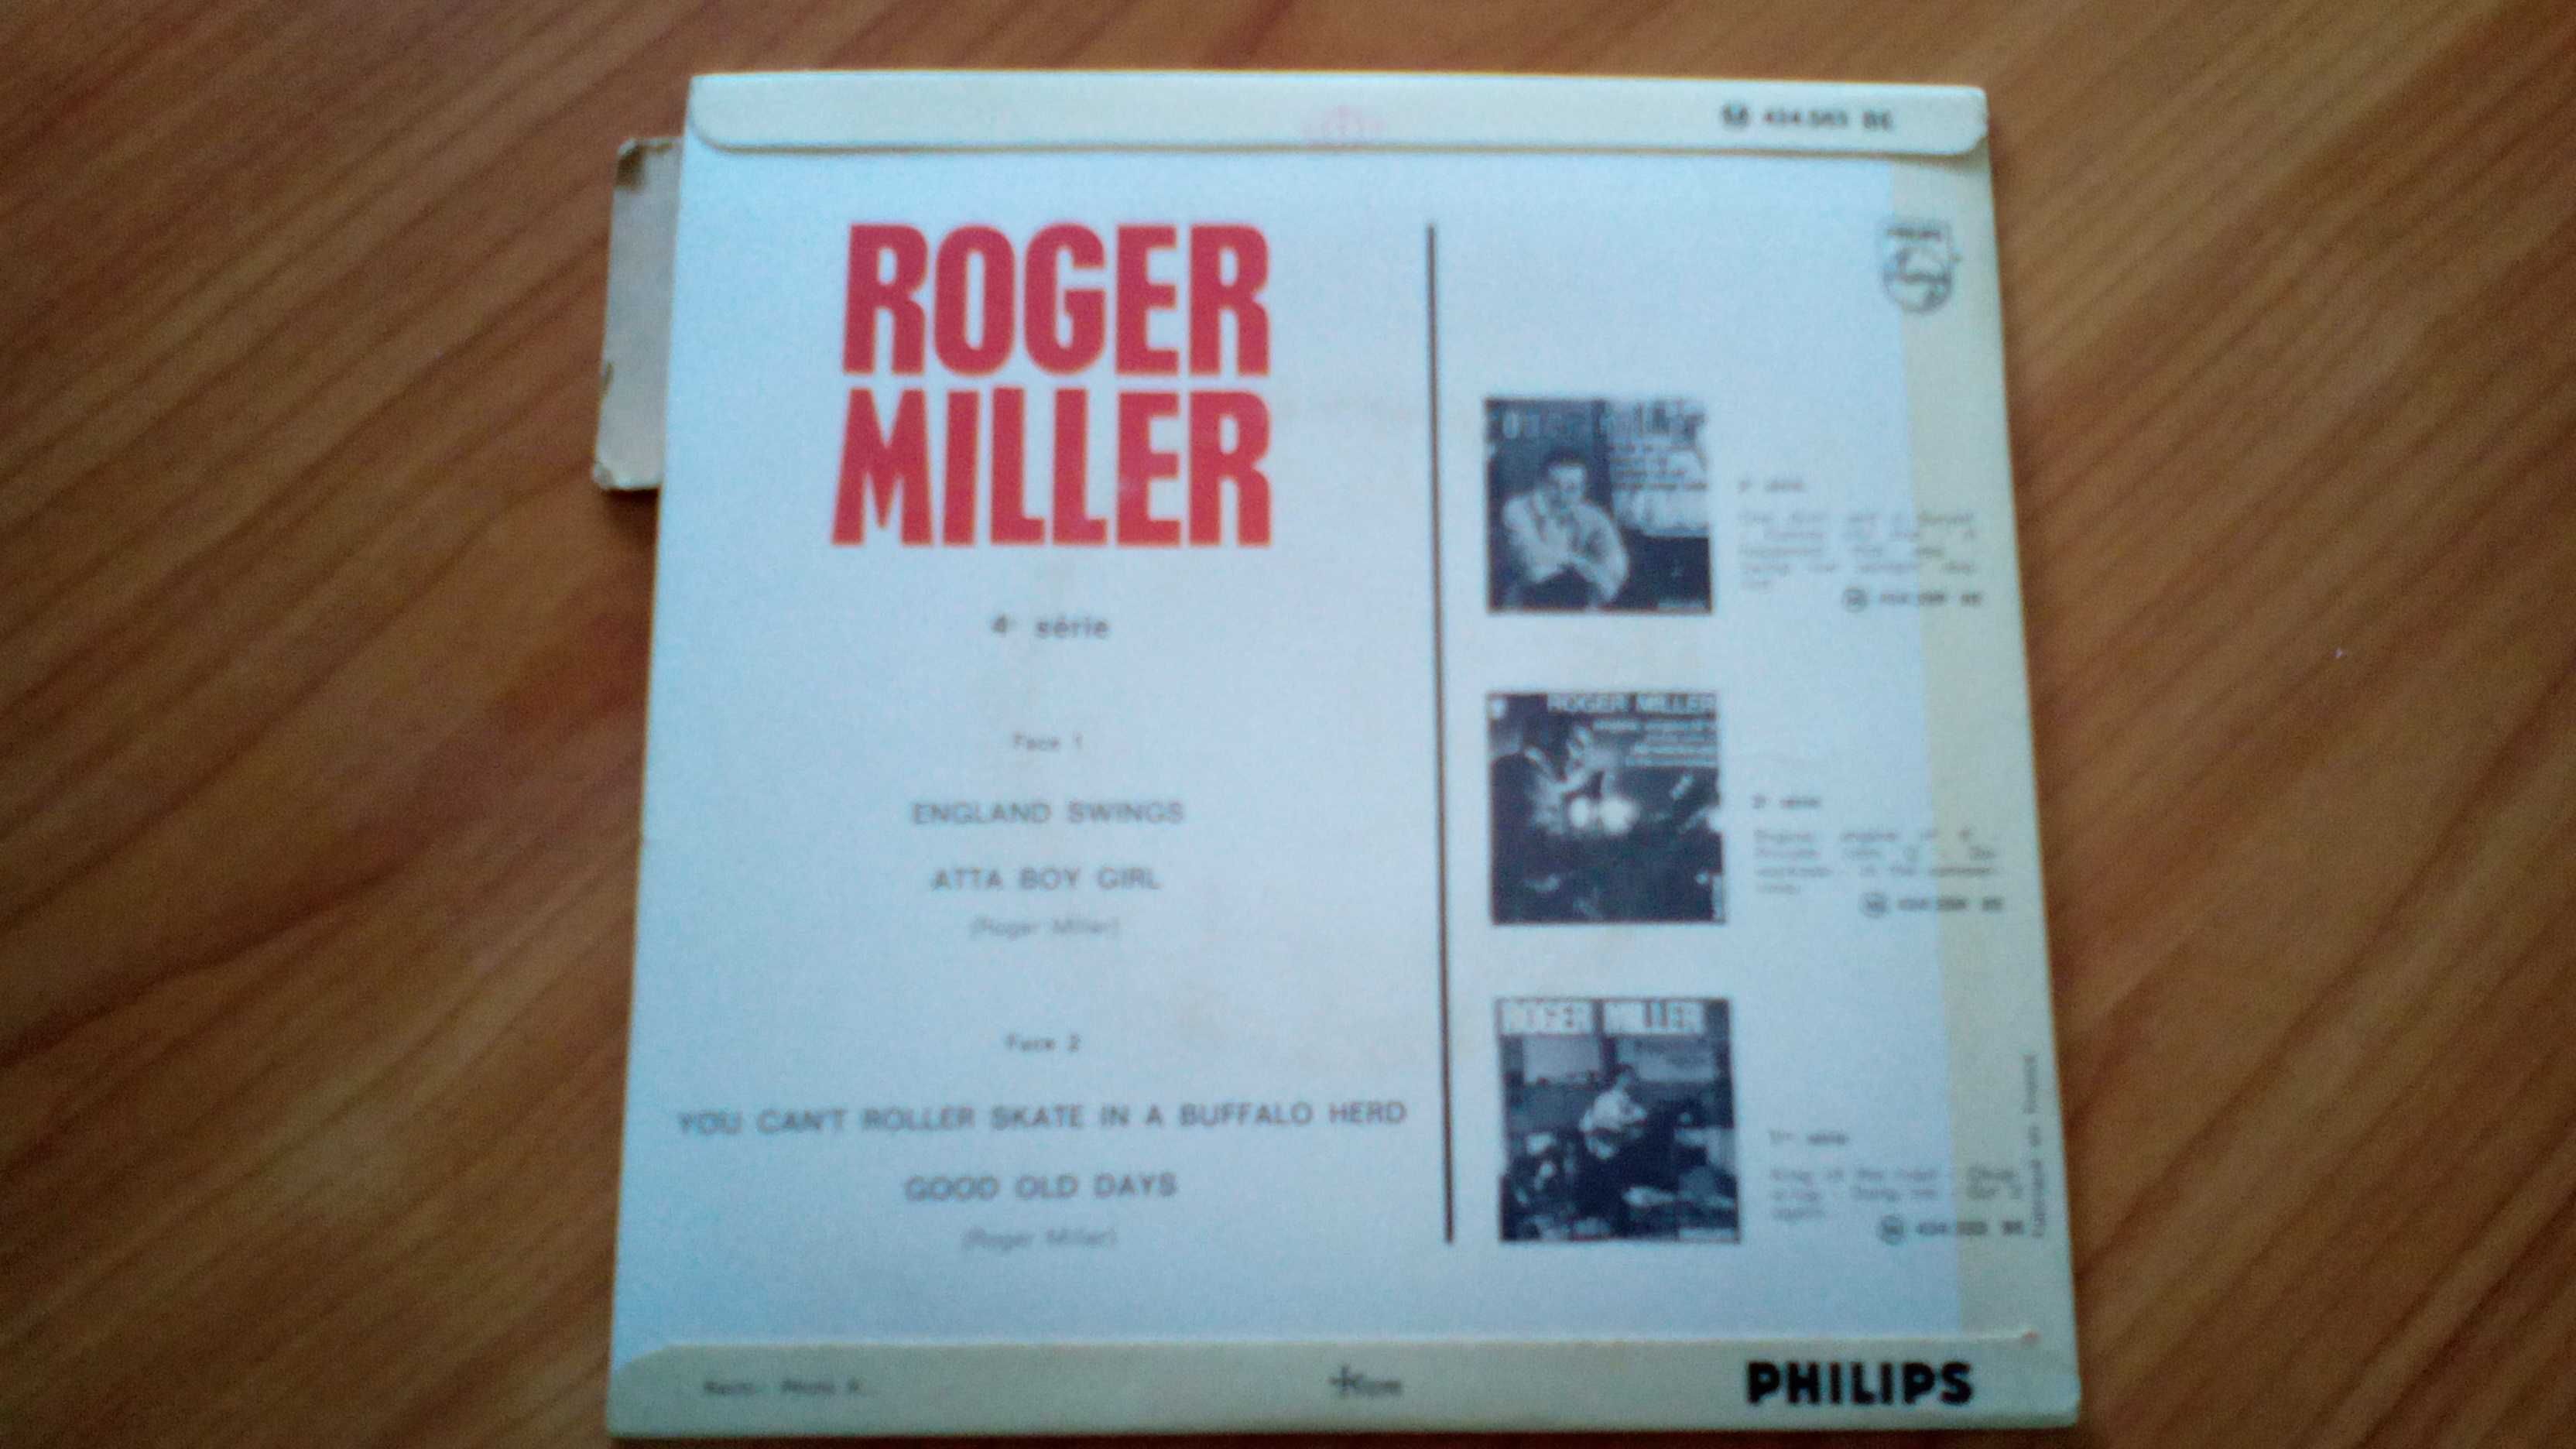 Roger Miller England Swings 1964